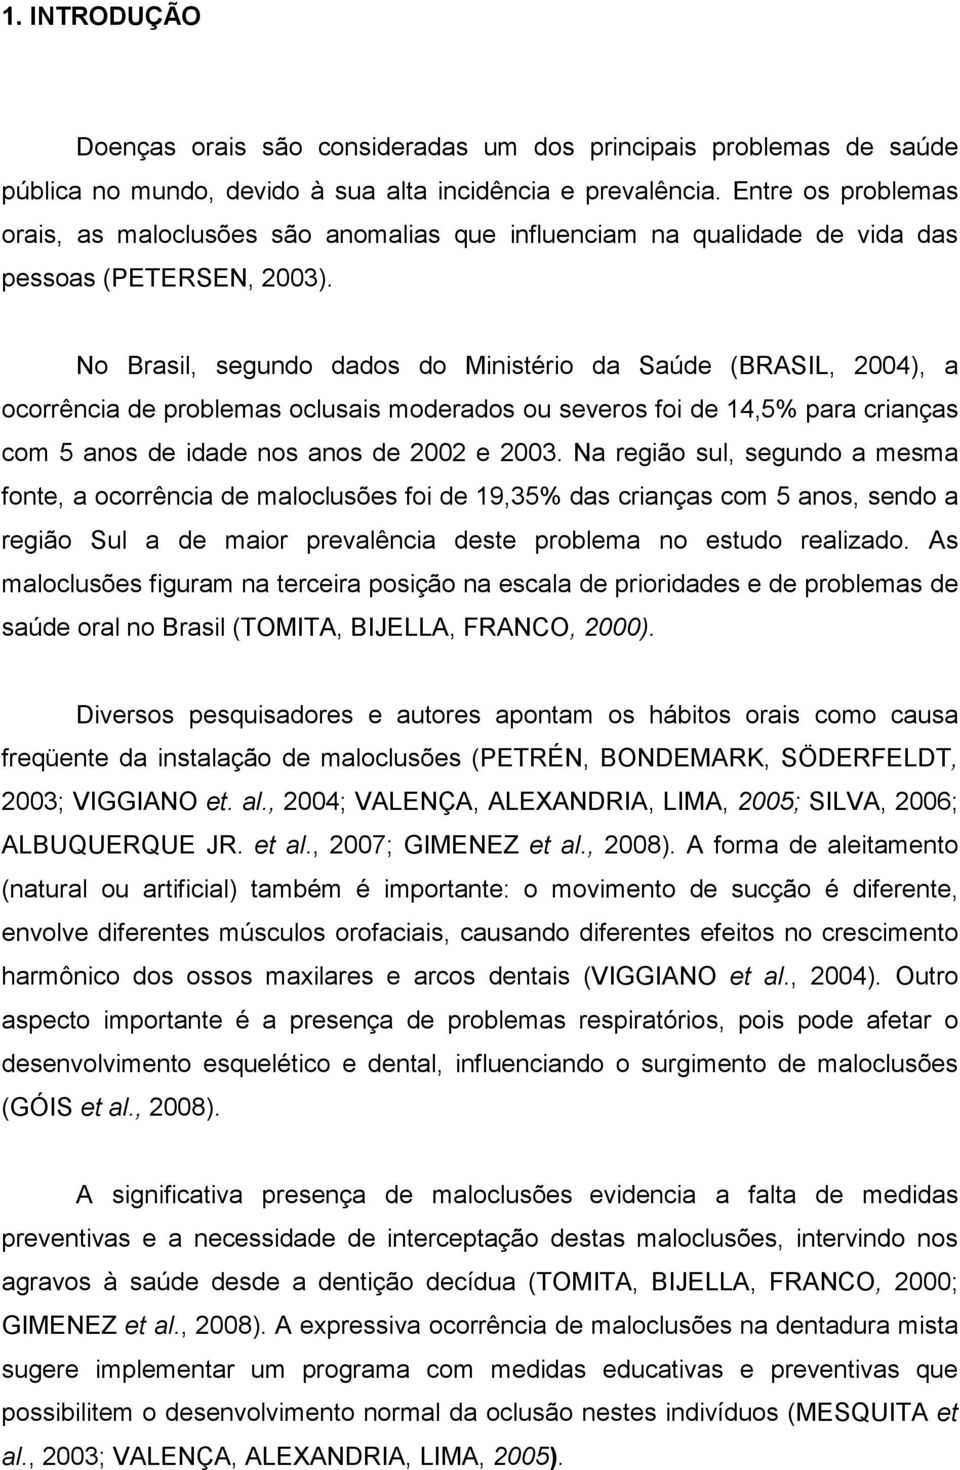 No Brasil, segundo dados do Ministério da Saúde (BRASIL, 2004), a ocorrência de problemas oclusais moderados ou severos foi de 14,5% para crianças com 5 anos de idade nos anos de 2002 e 2003.